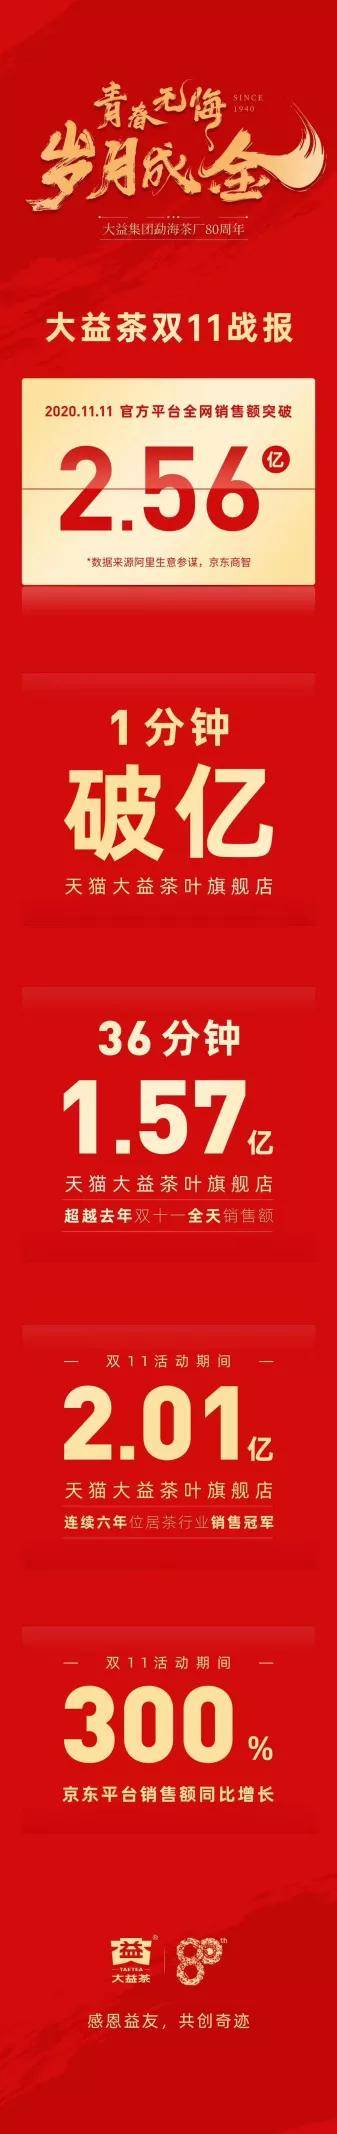 双11排行榜_京东双11手机销量排行出炉:前十不见苹果12,小米成最大赢家